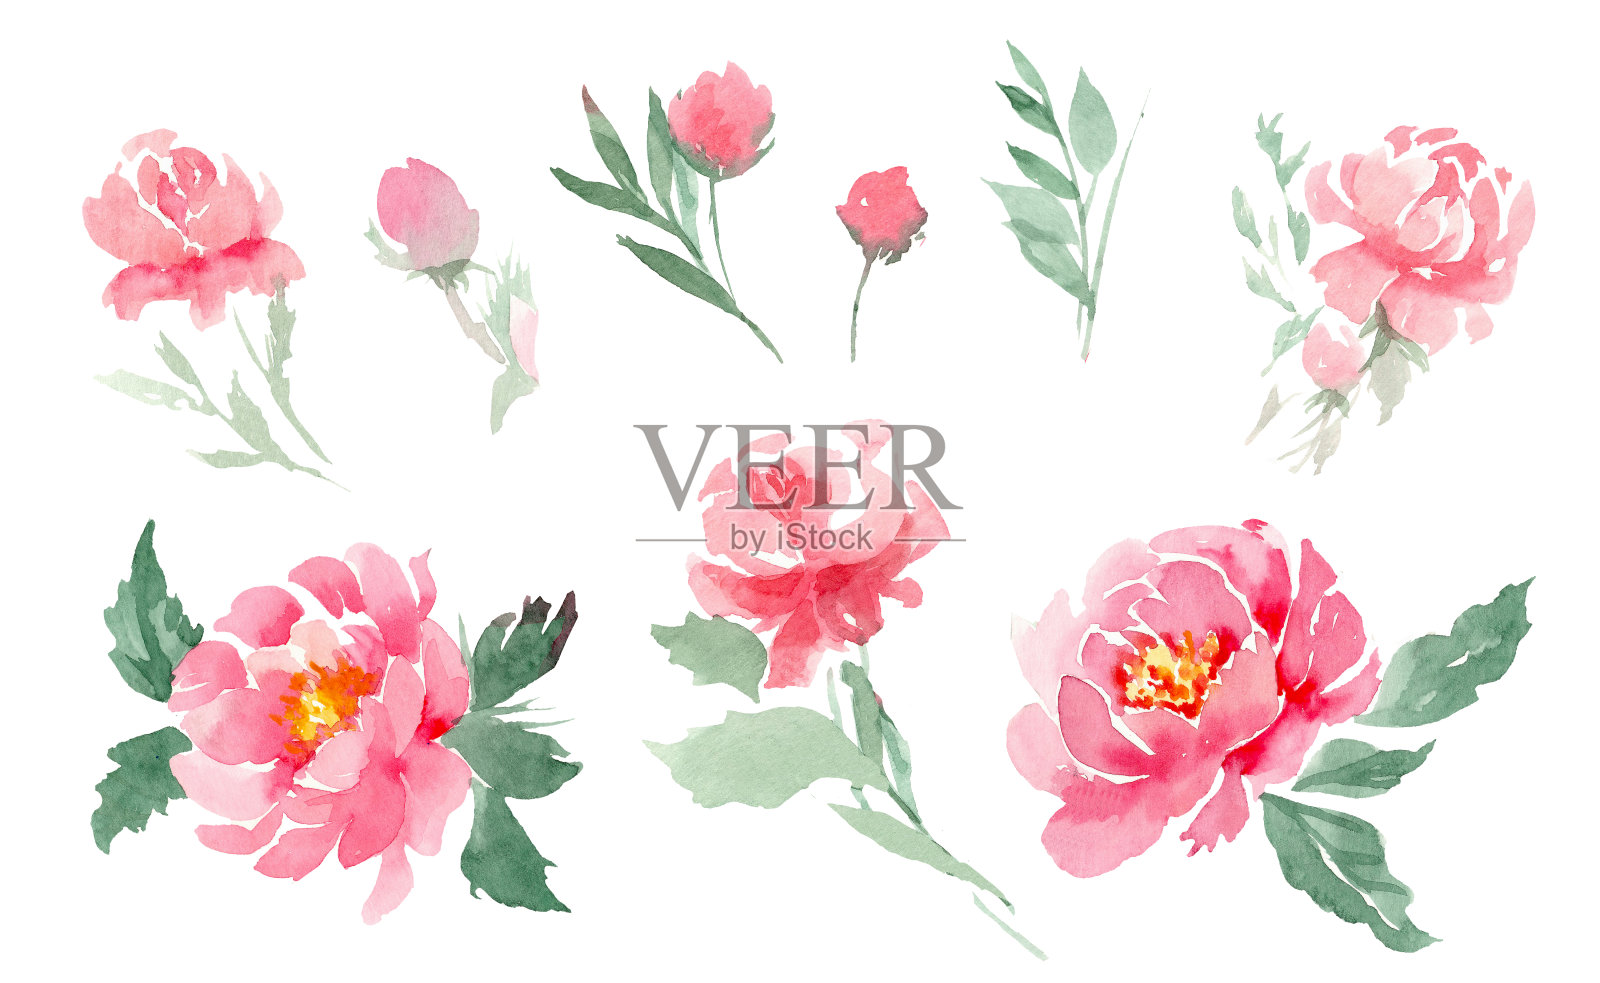 一套水彩元素的粉红色牡丹，叶子和芽在一个孤立的白色背景。制作花束、卡片、请柬、标签等插画图片素材